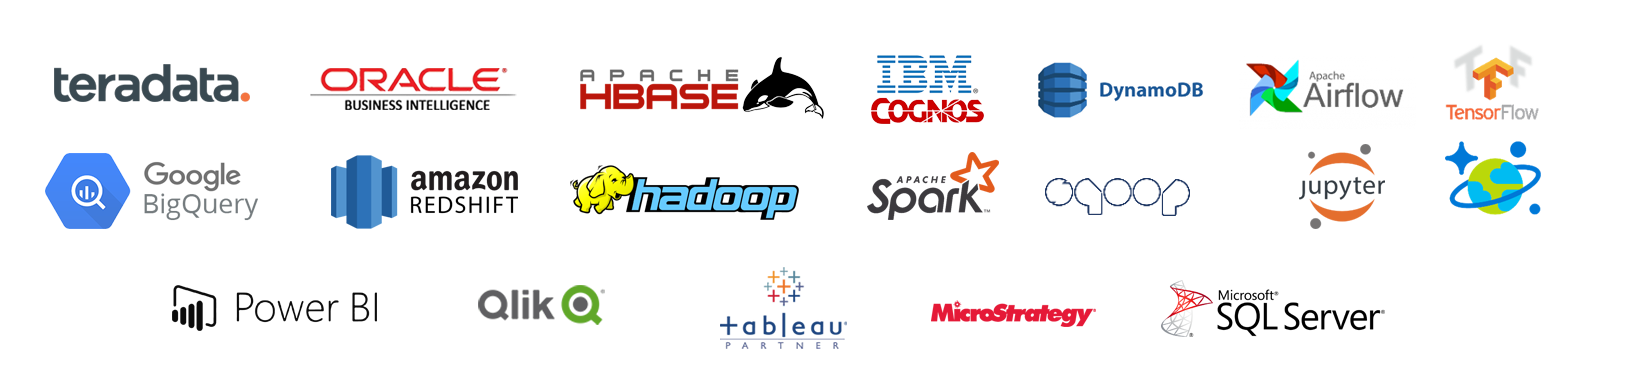 Imagen de los logos de clientes de Hiberus